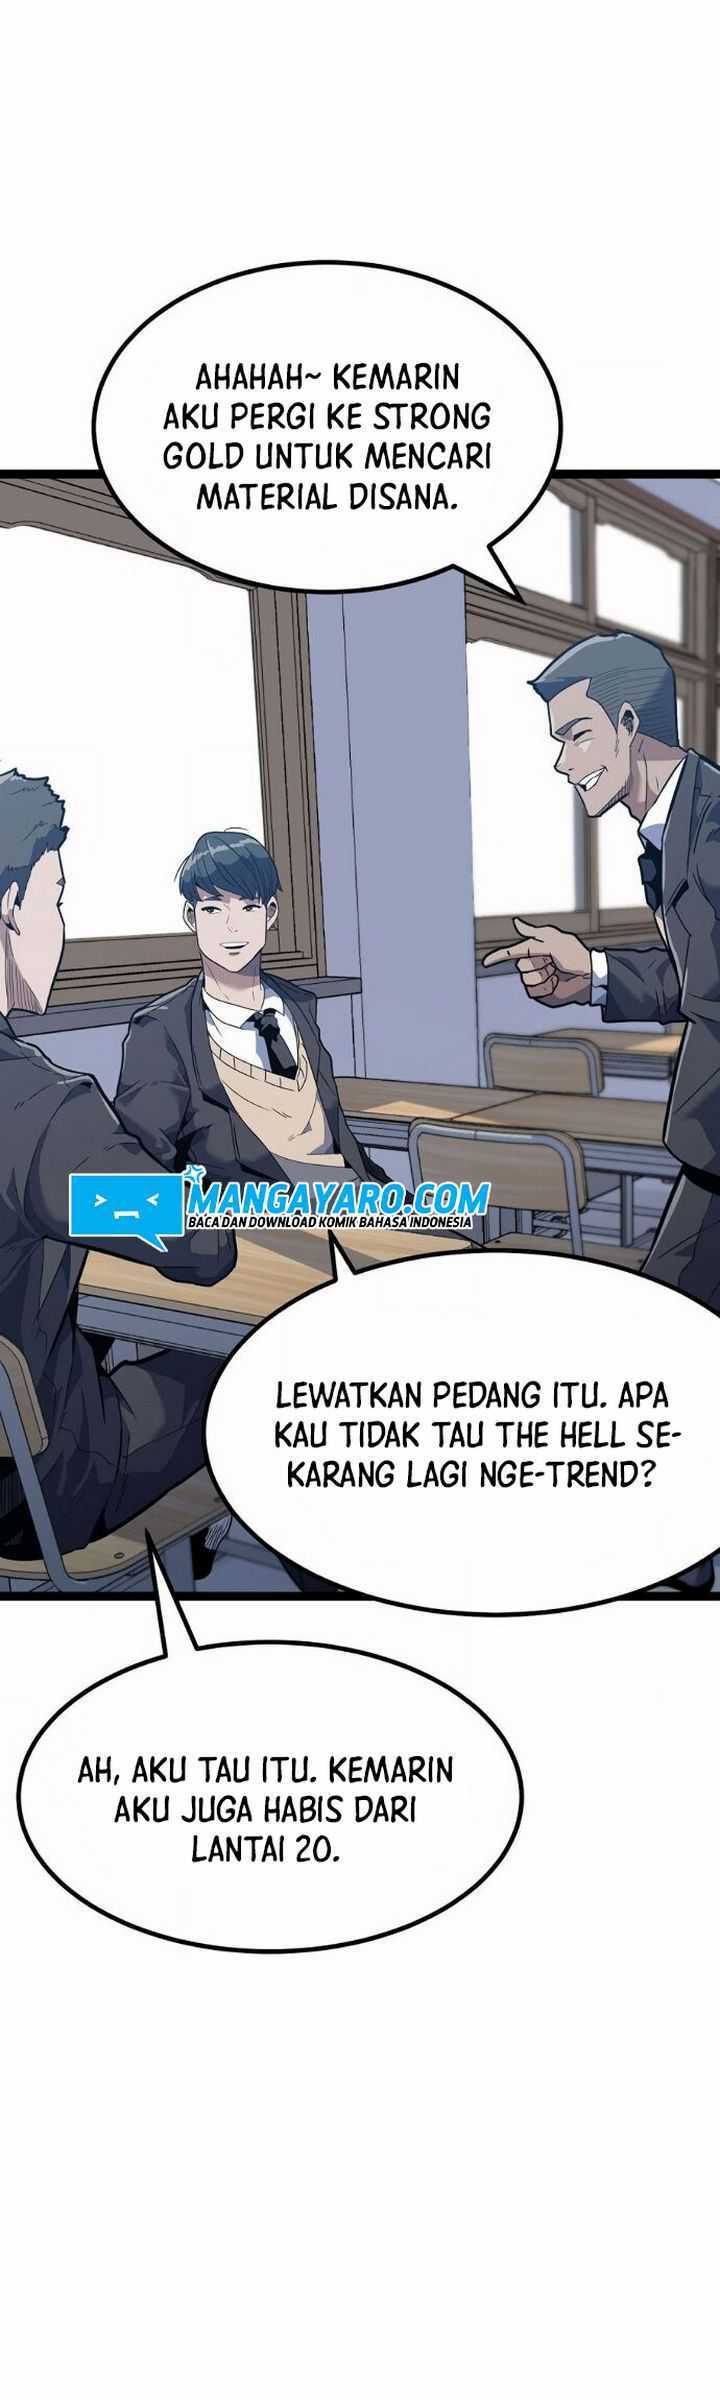 Level Berserker Chapter 01.1 bahasa indonesia